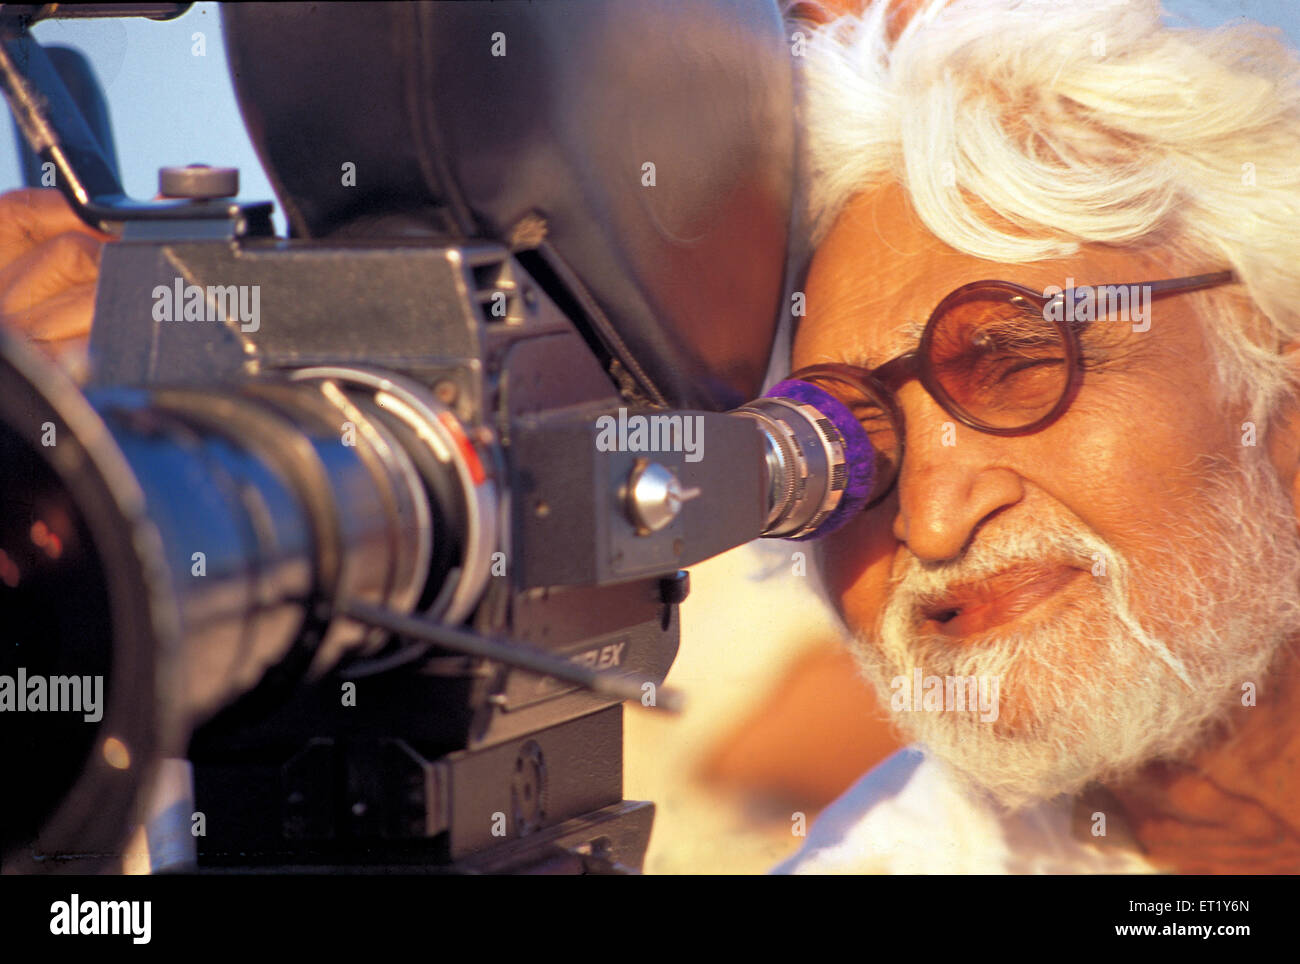 M F Hussain derrière la caméra au cours de tournage de film garçon pandharpur Asie Inde Banque D'Images